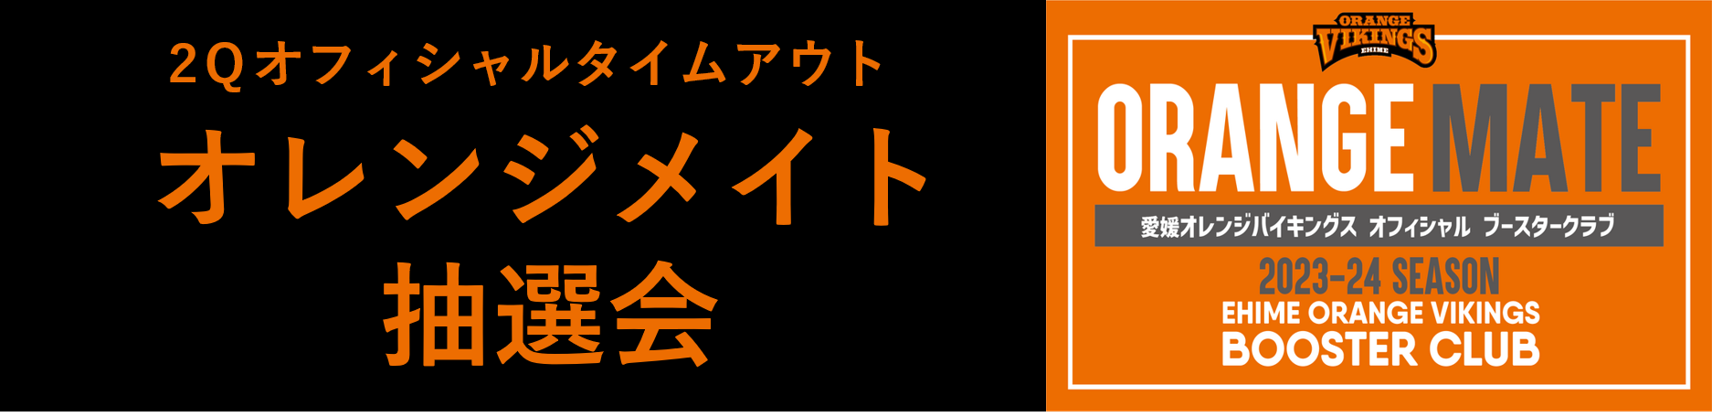 試合情報】2/16(金)、2/17(土) vs 岩手ビッグブルズ | 愛媛オレンジ